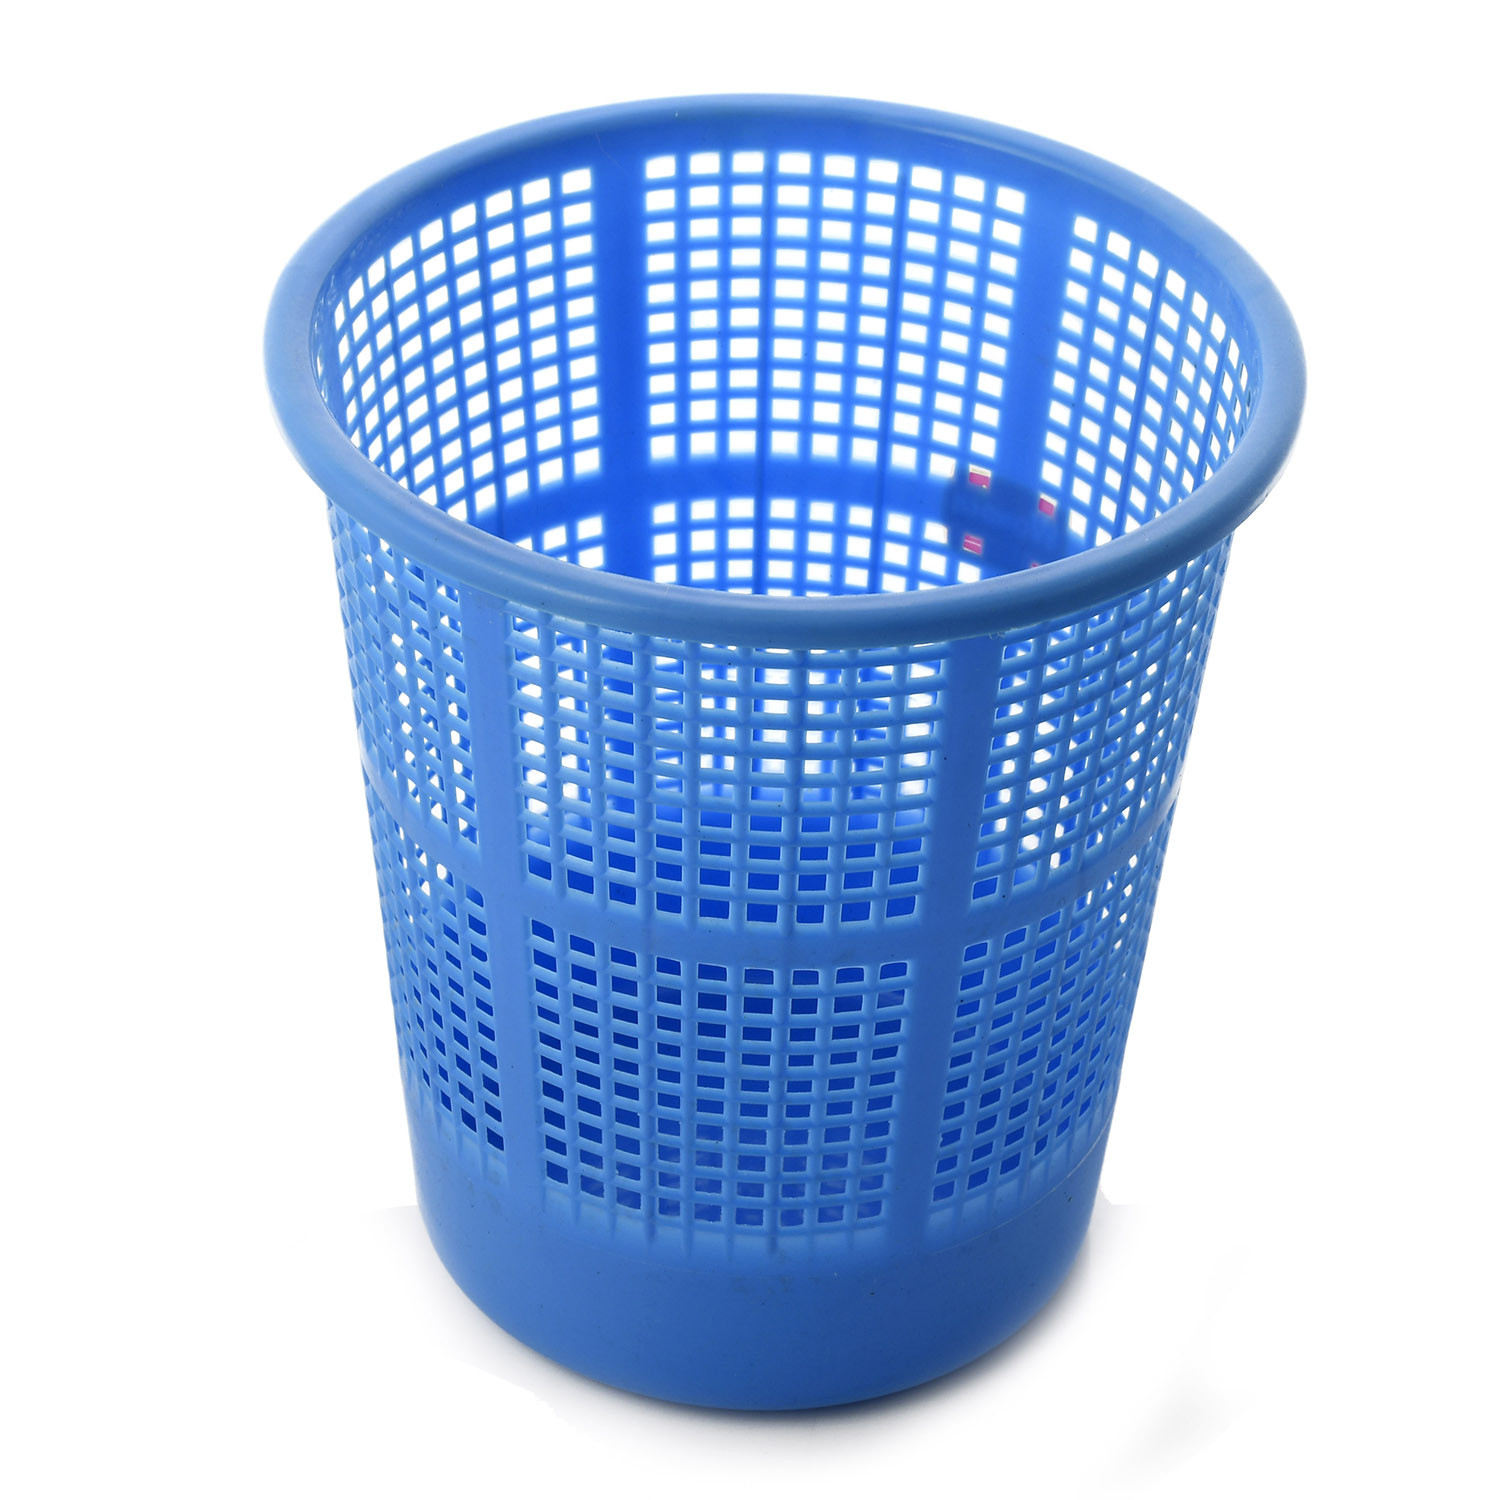 Kuber Industries Plastic Mesh Dustbin Garbage Bin for Office use, School, Bedroom,Kids Room, Home, Multi Purpose,5 Liters (Blue)